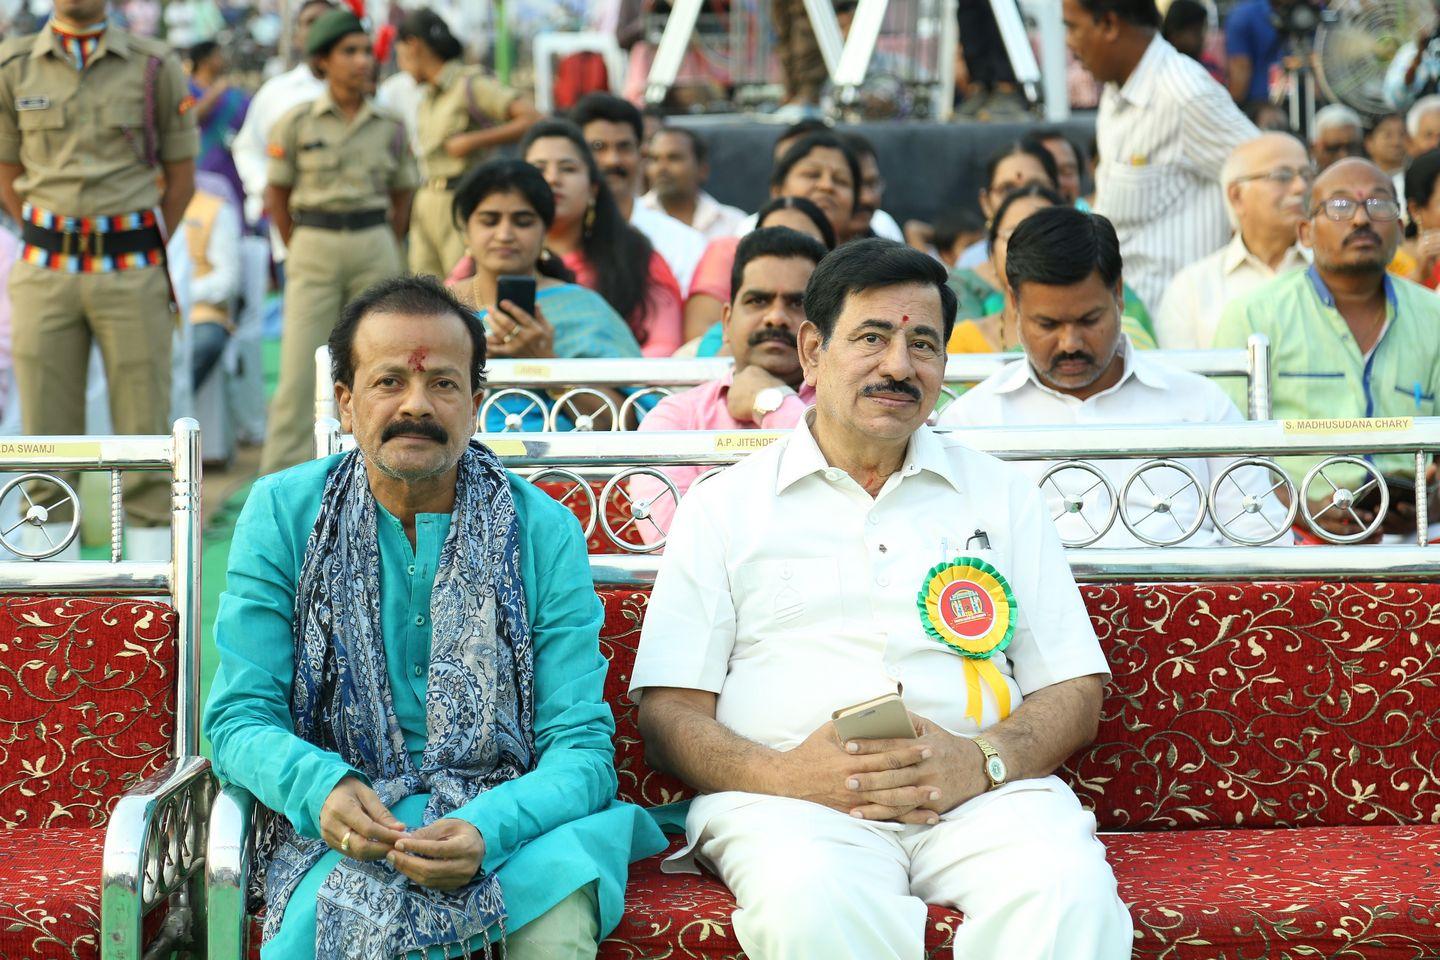 Photos: Kakatiya Lalitha Kala Parishad Cultural Event